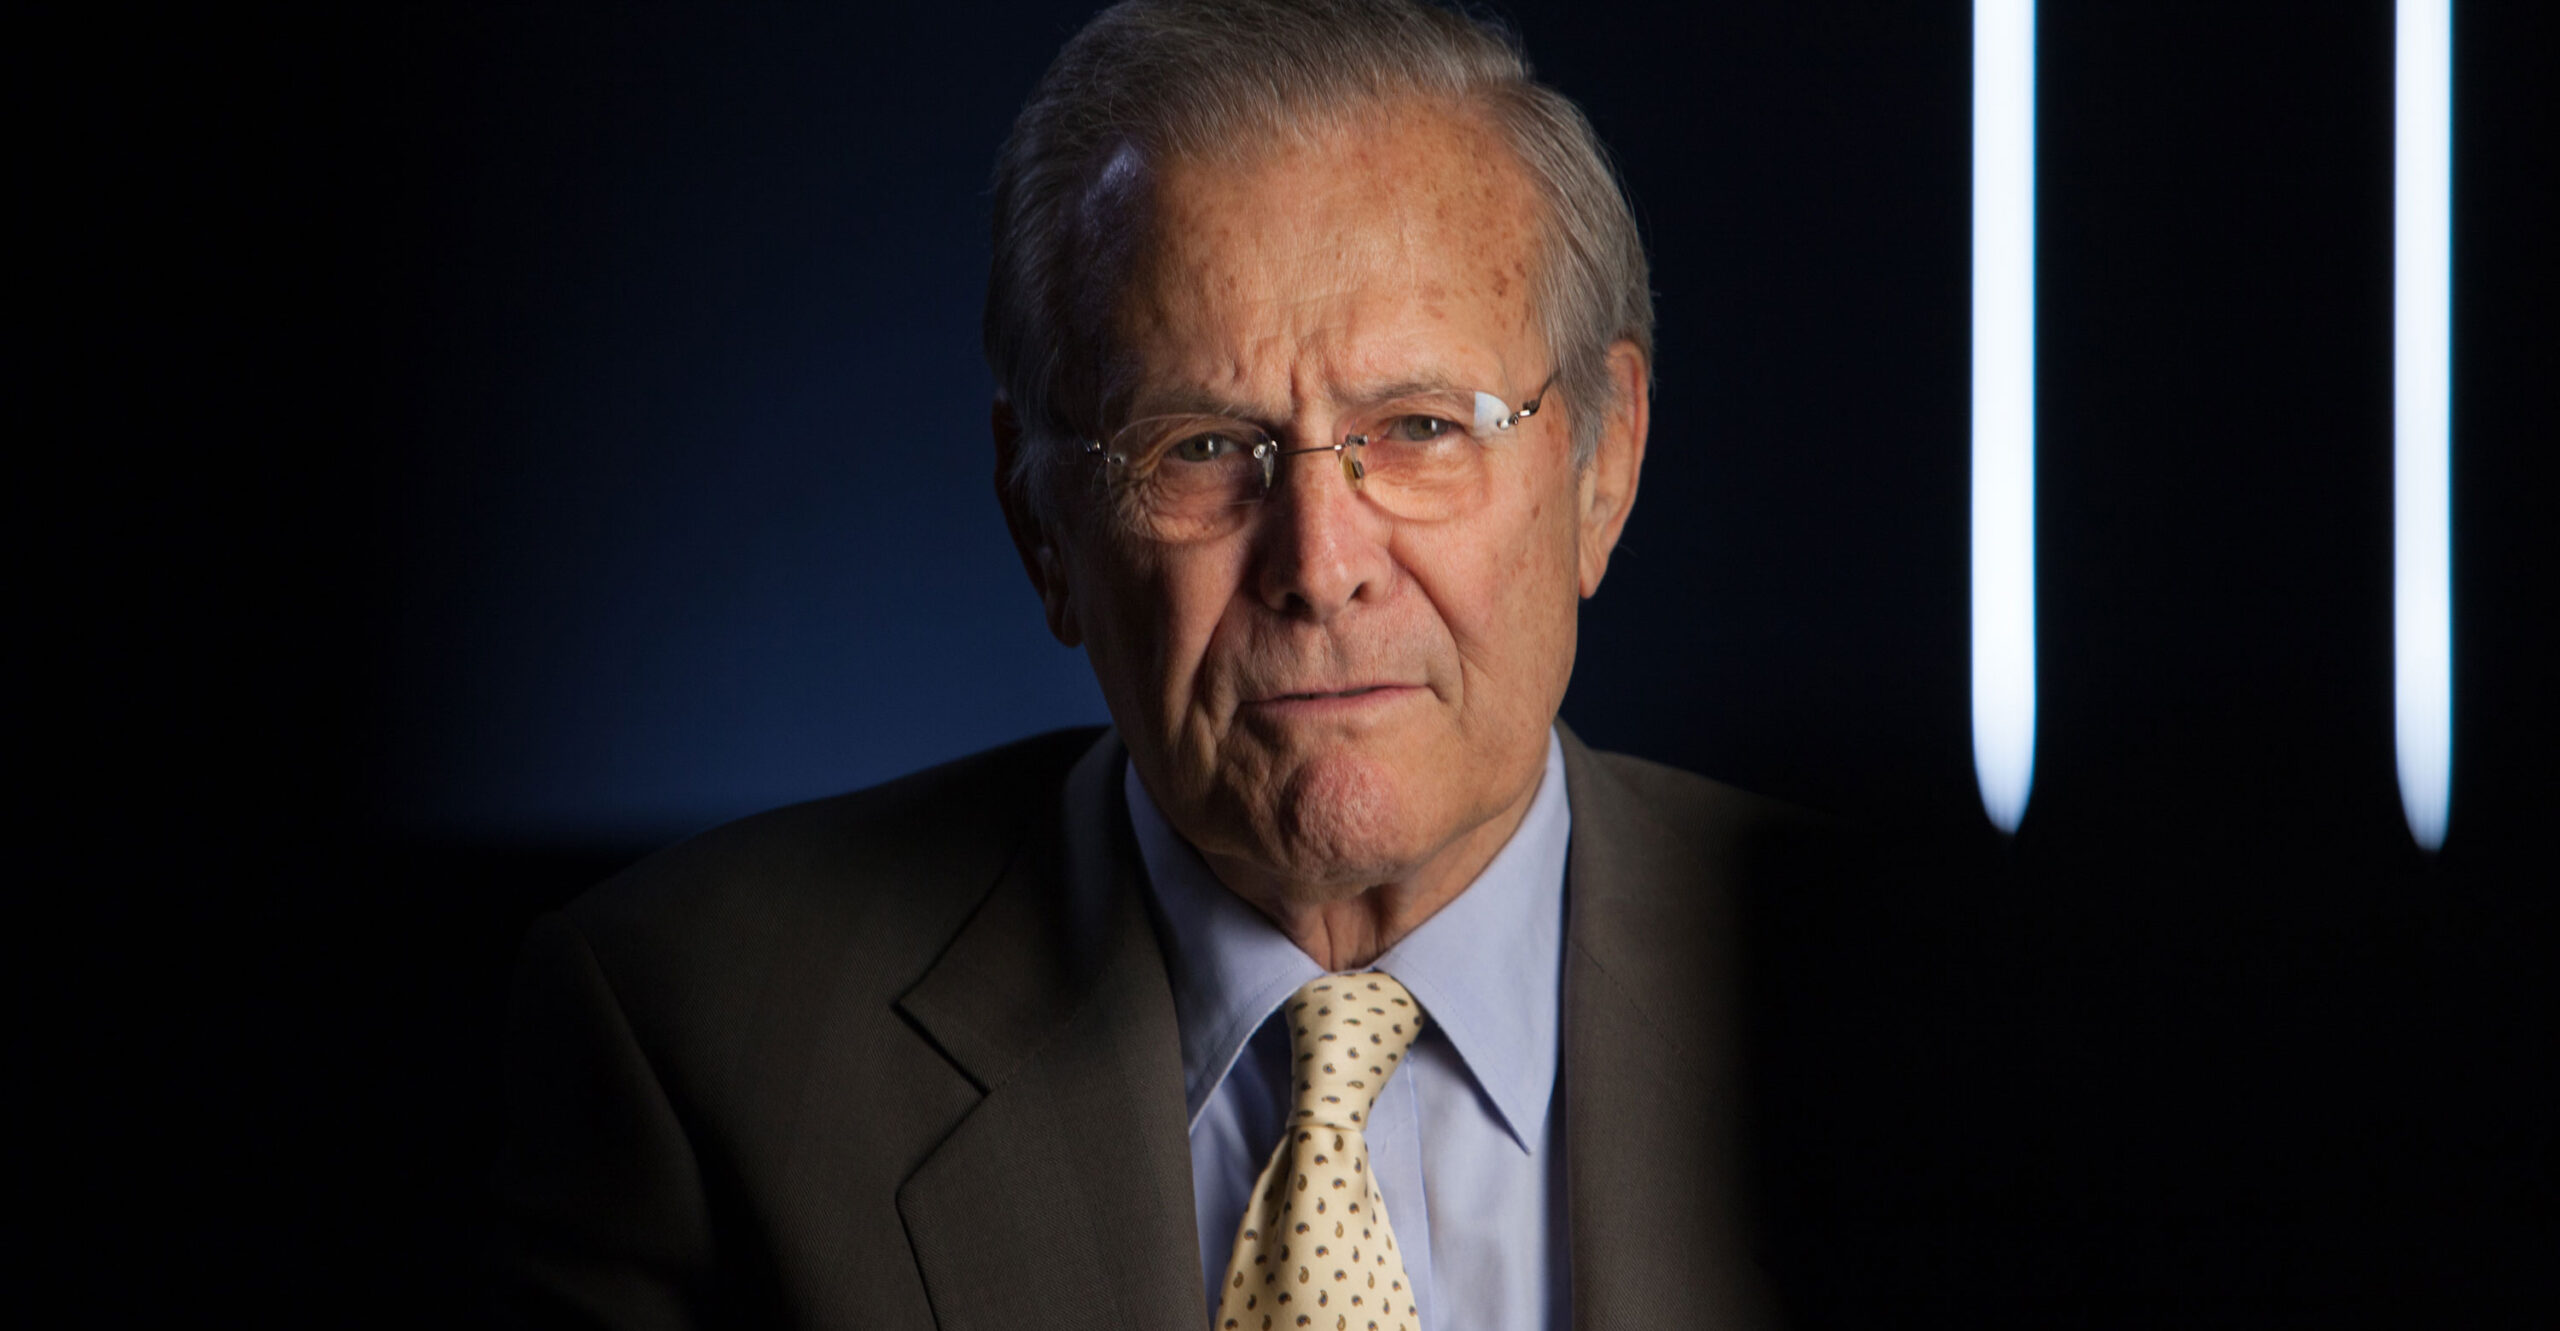 Remembering My Boss, Donald Rumsfeld